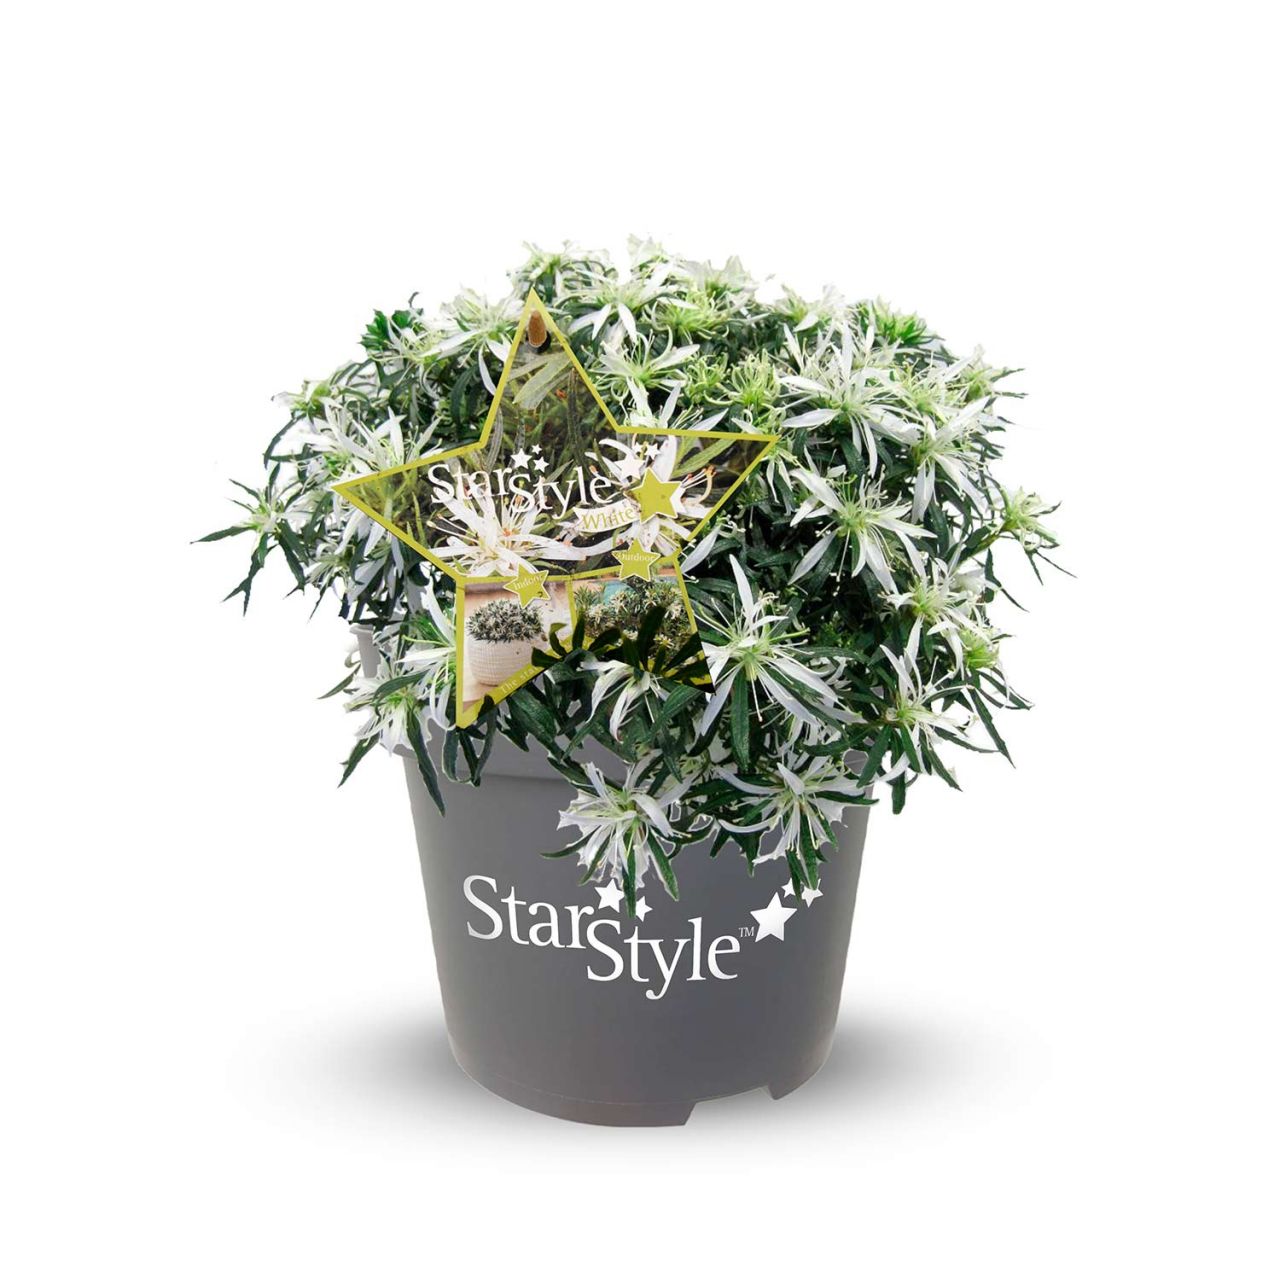 Kategorie <b>Azaleen </b> - Japanische Azalee 'StarStyle®' Weiß - Rhododendron obtusum 'StarStyle'® weiß